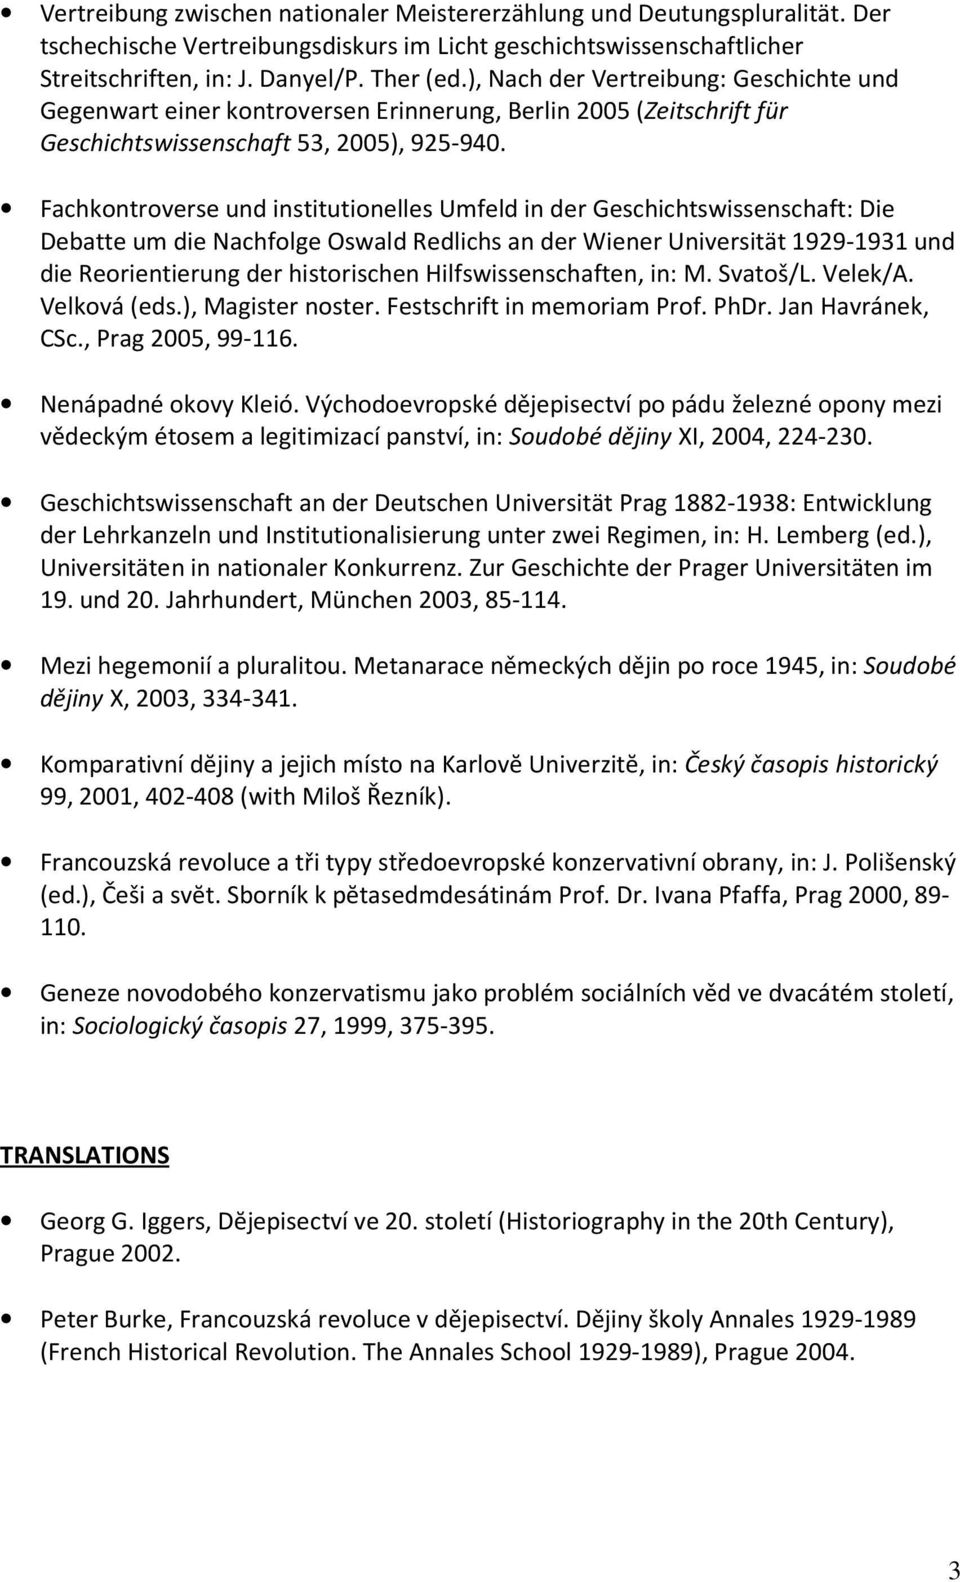 Fachkontroverse und institutionelles Umfeld in der Geschichtswissenschaft: Die Debatte um die Nachfolge Oswald Redlichs an der Wiener Universität 1929-1931 und die Reorientierung der historischen